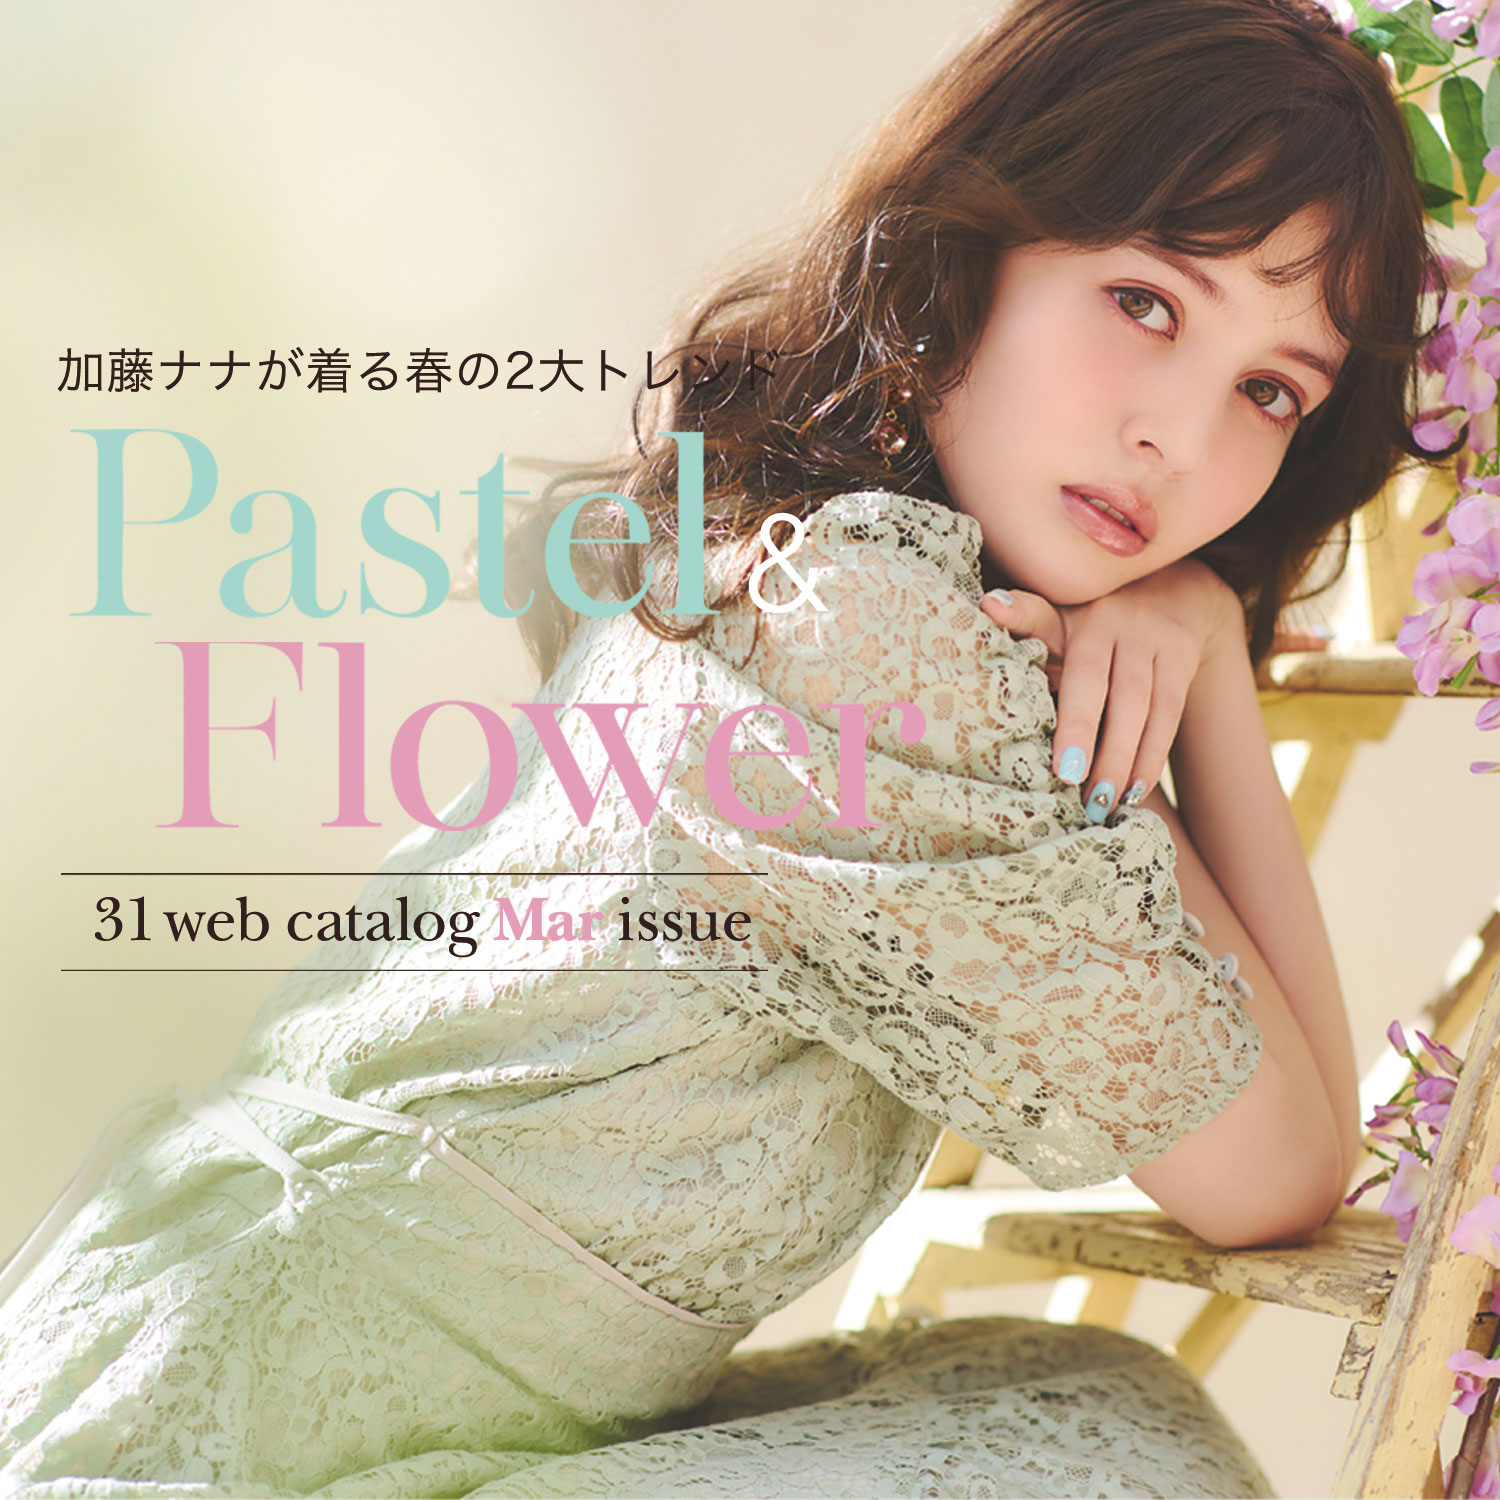 加藤ナナが着る春の2大トレンド Pastel&Flower 31 web catalog Mar issue